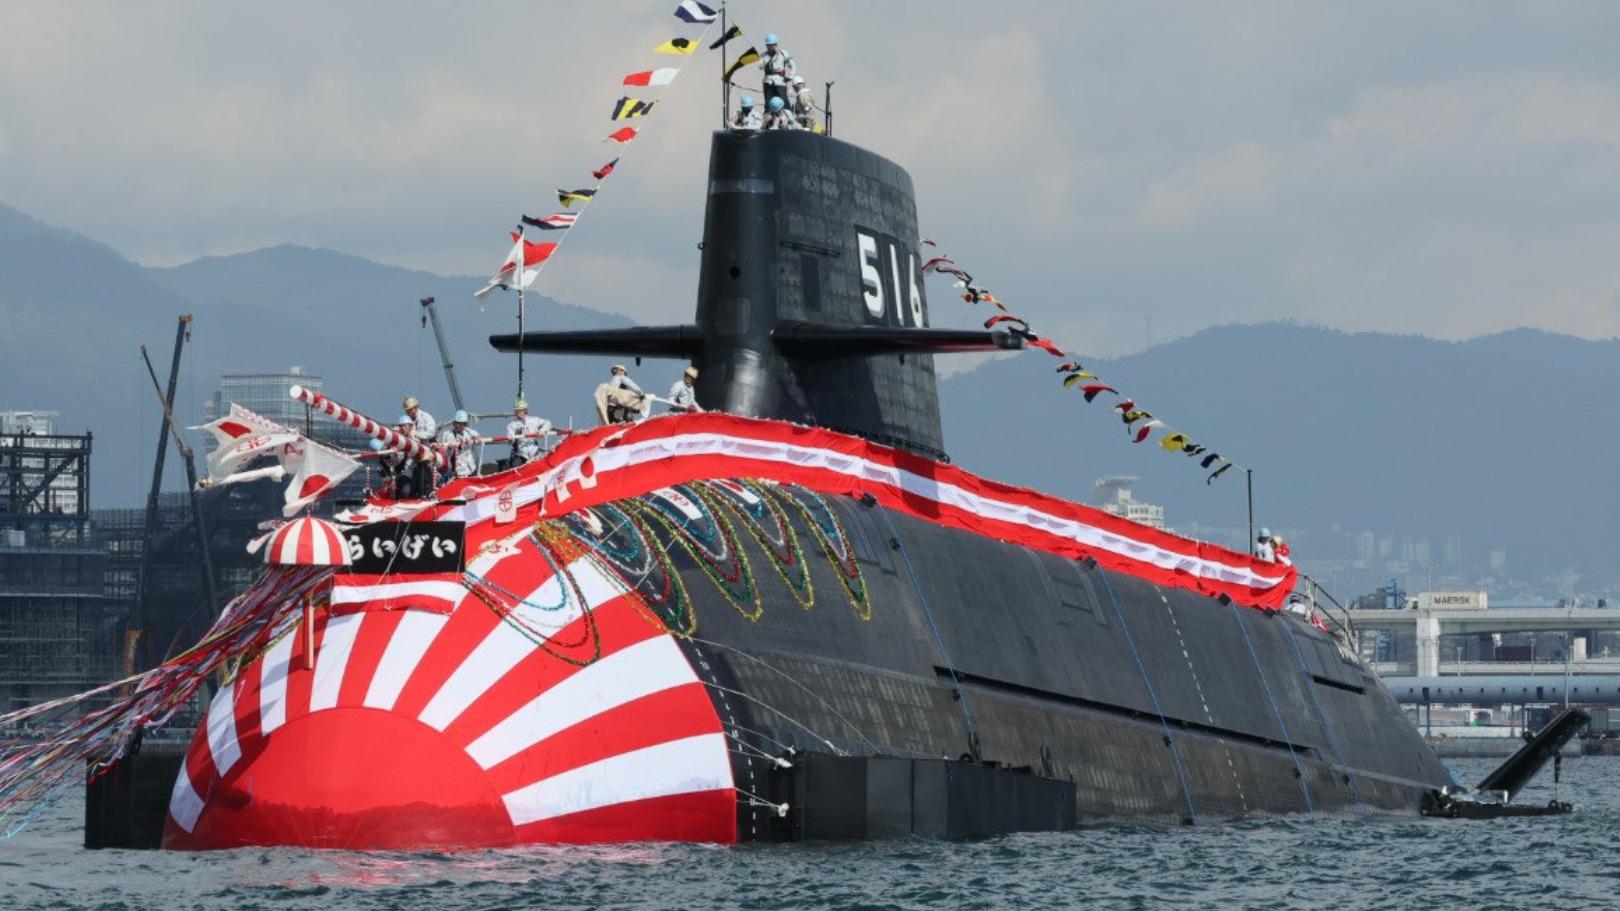 海自の最新鋭潜水艦たいげい型4番艦「らいげい」進水 高出力の新型ディーゼル機関を初採用（高橋浩祐） - エキスパート - Yahoo!ニュース